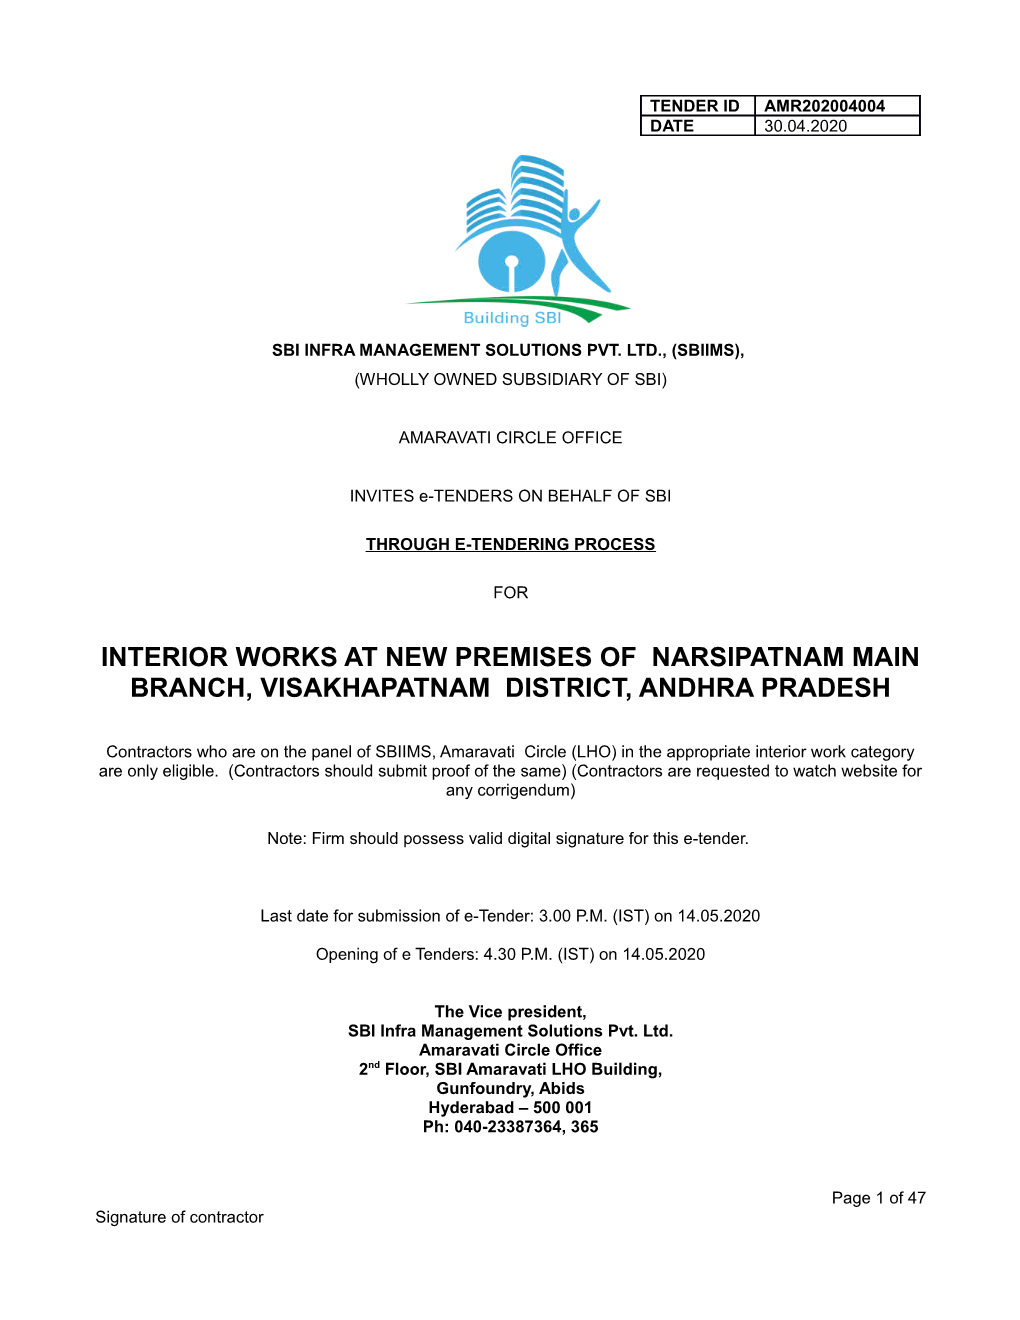 Interior Works at New Premises of Narsipatnam Main Branch, Visakhapatnam District, Andhra Pradesh